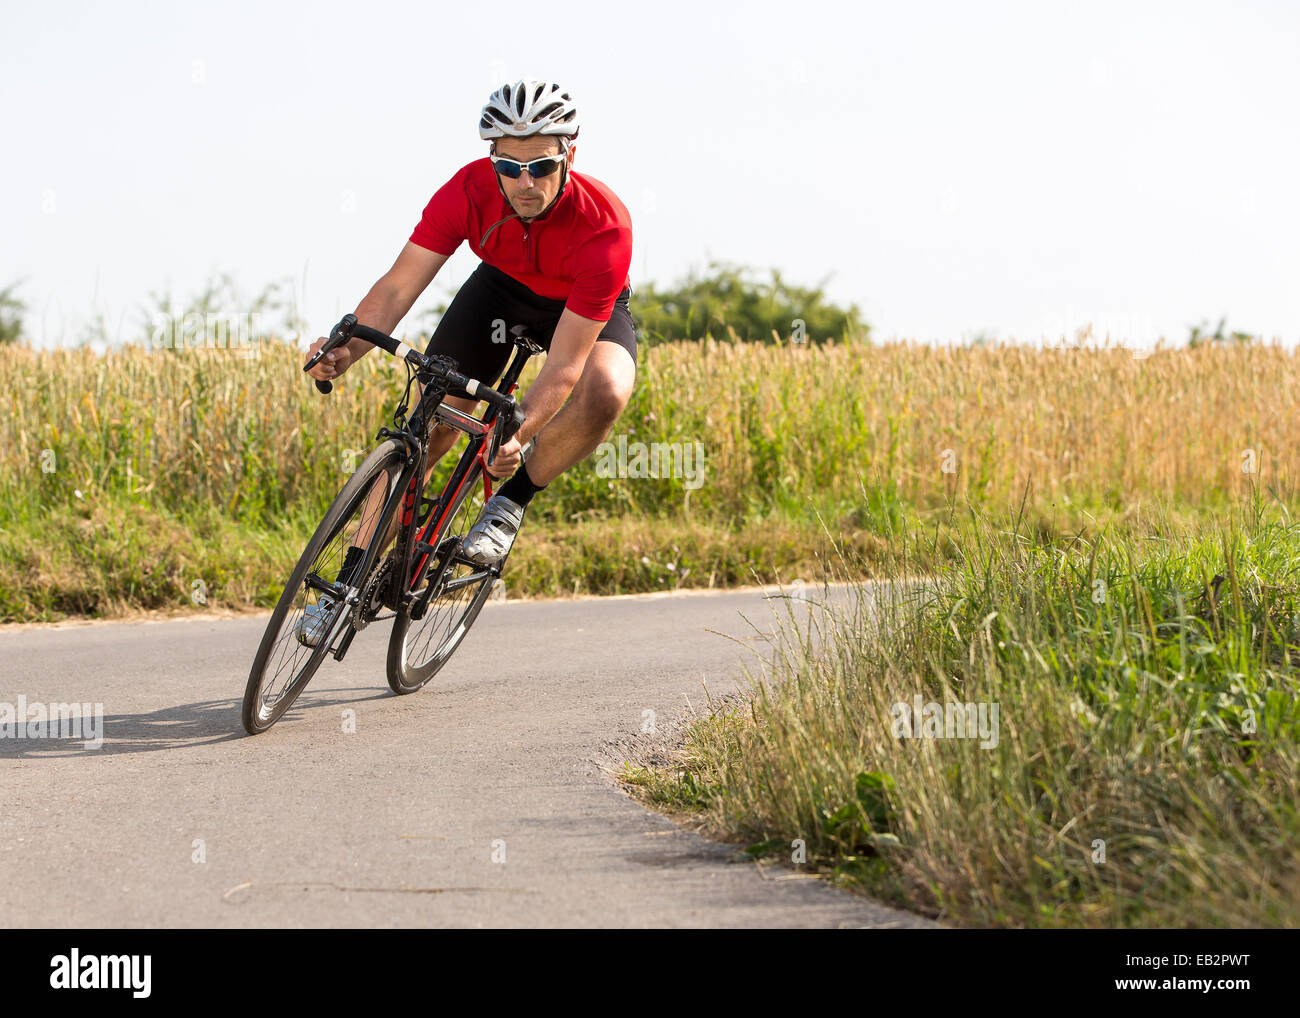 El ciclista, de 44 años, montando en un ciclo de carreras, Winterbach, Baden-Württemberg, Alemania Foto de stock